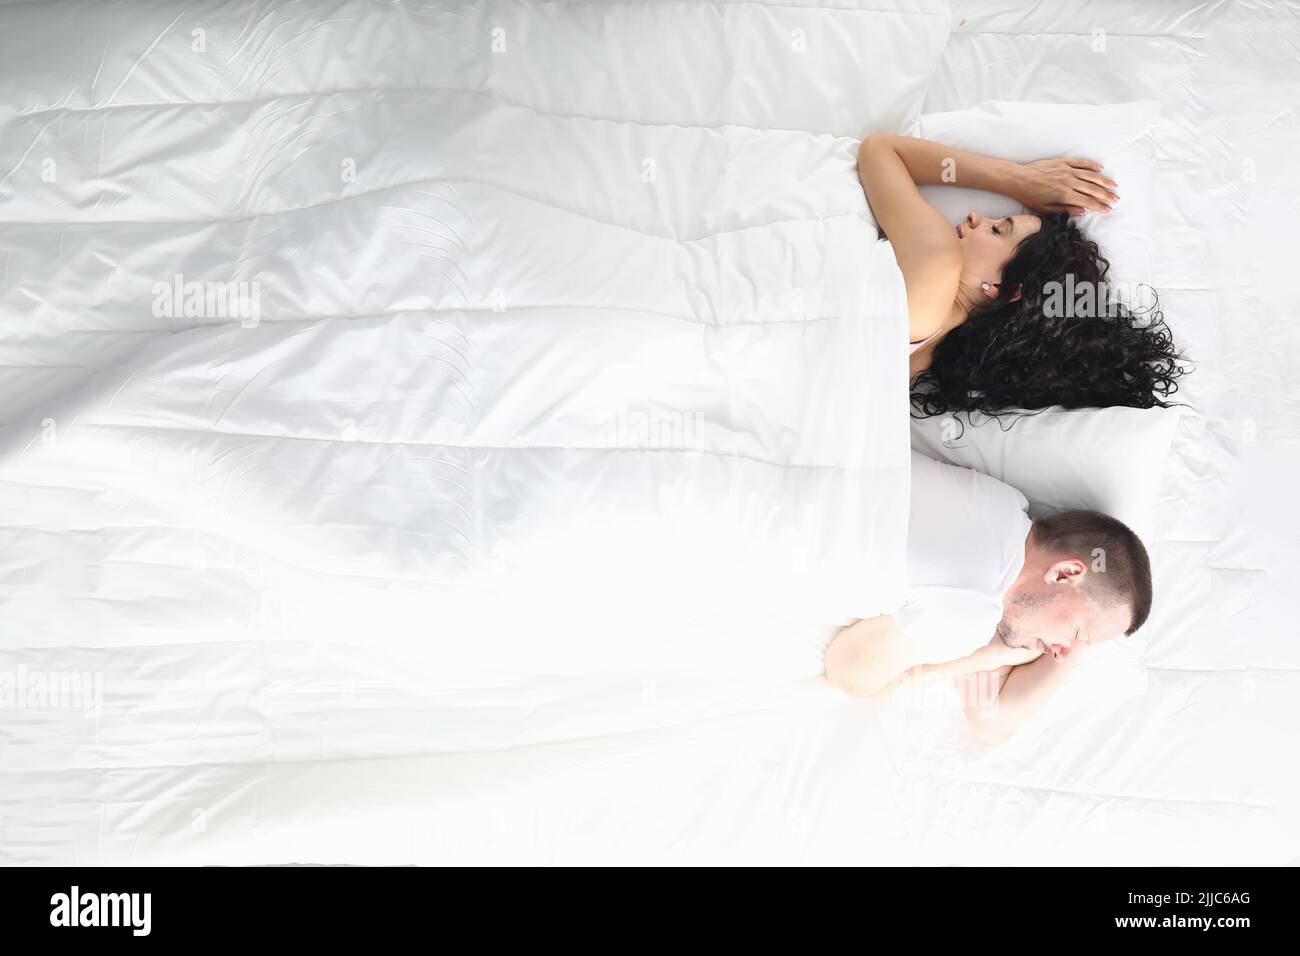 К чему снится что муж признался. Друг на друг лицом на кровати.